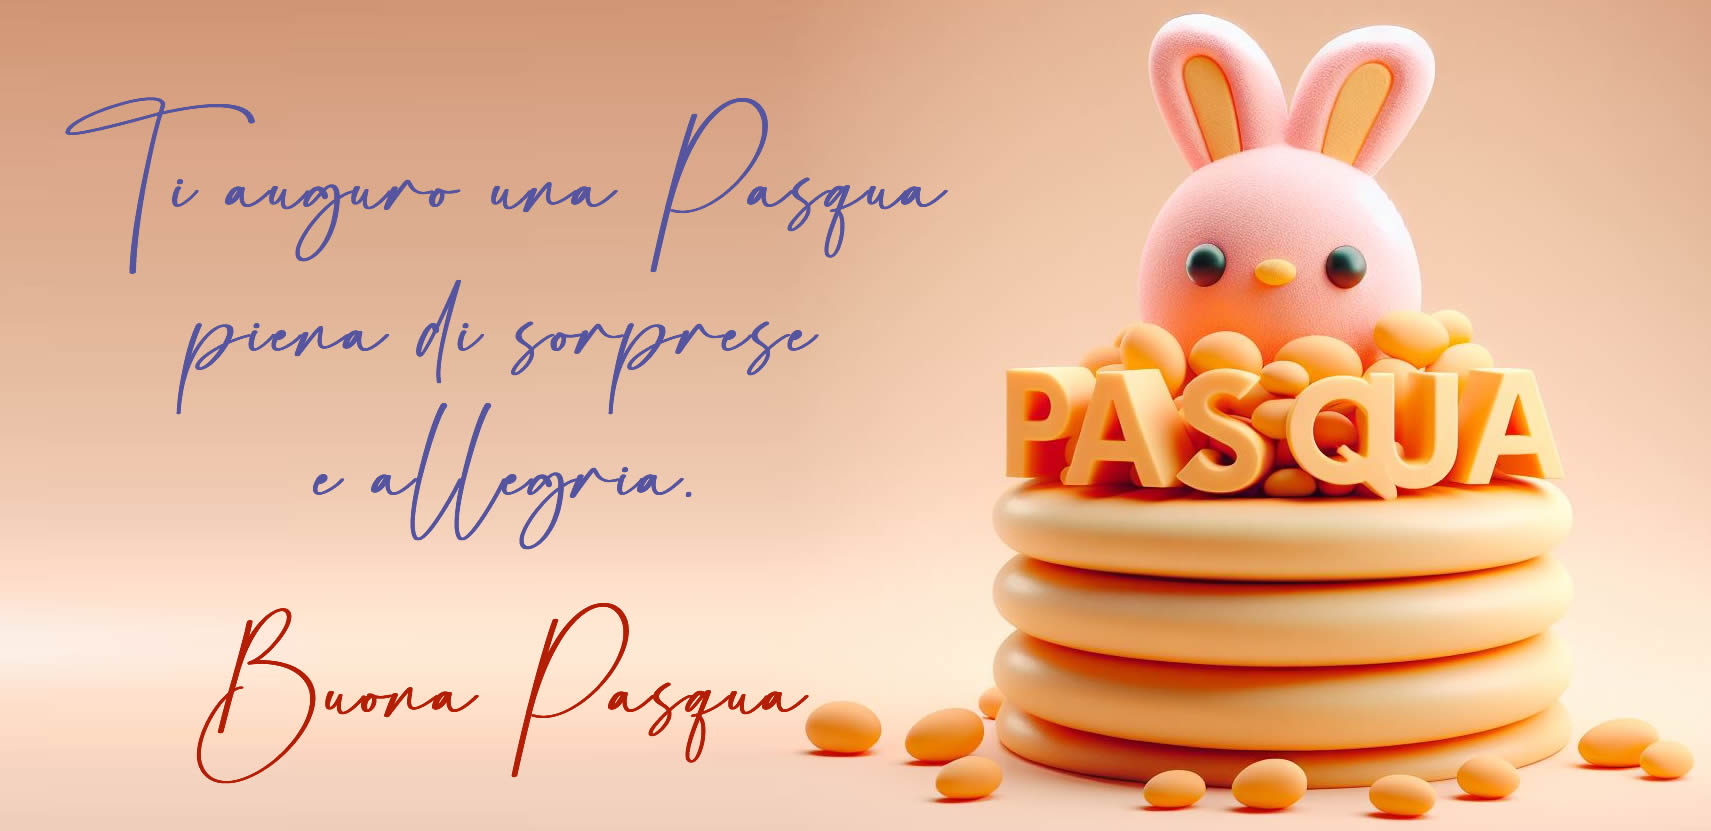 Cartolina pasquale con messaggio di auguri: Ti auguro una Pasqua piena di sorprese e allegria.